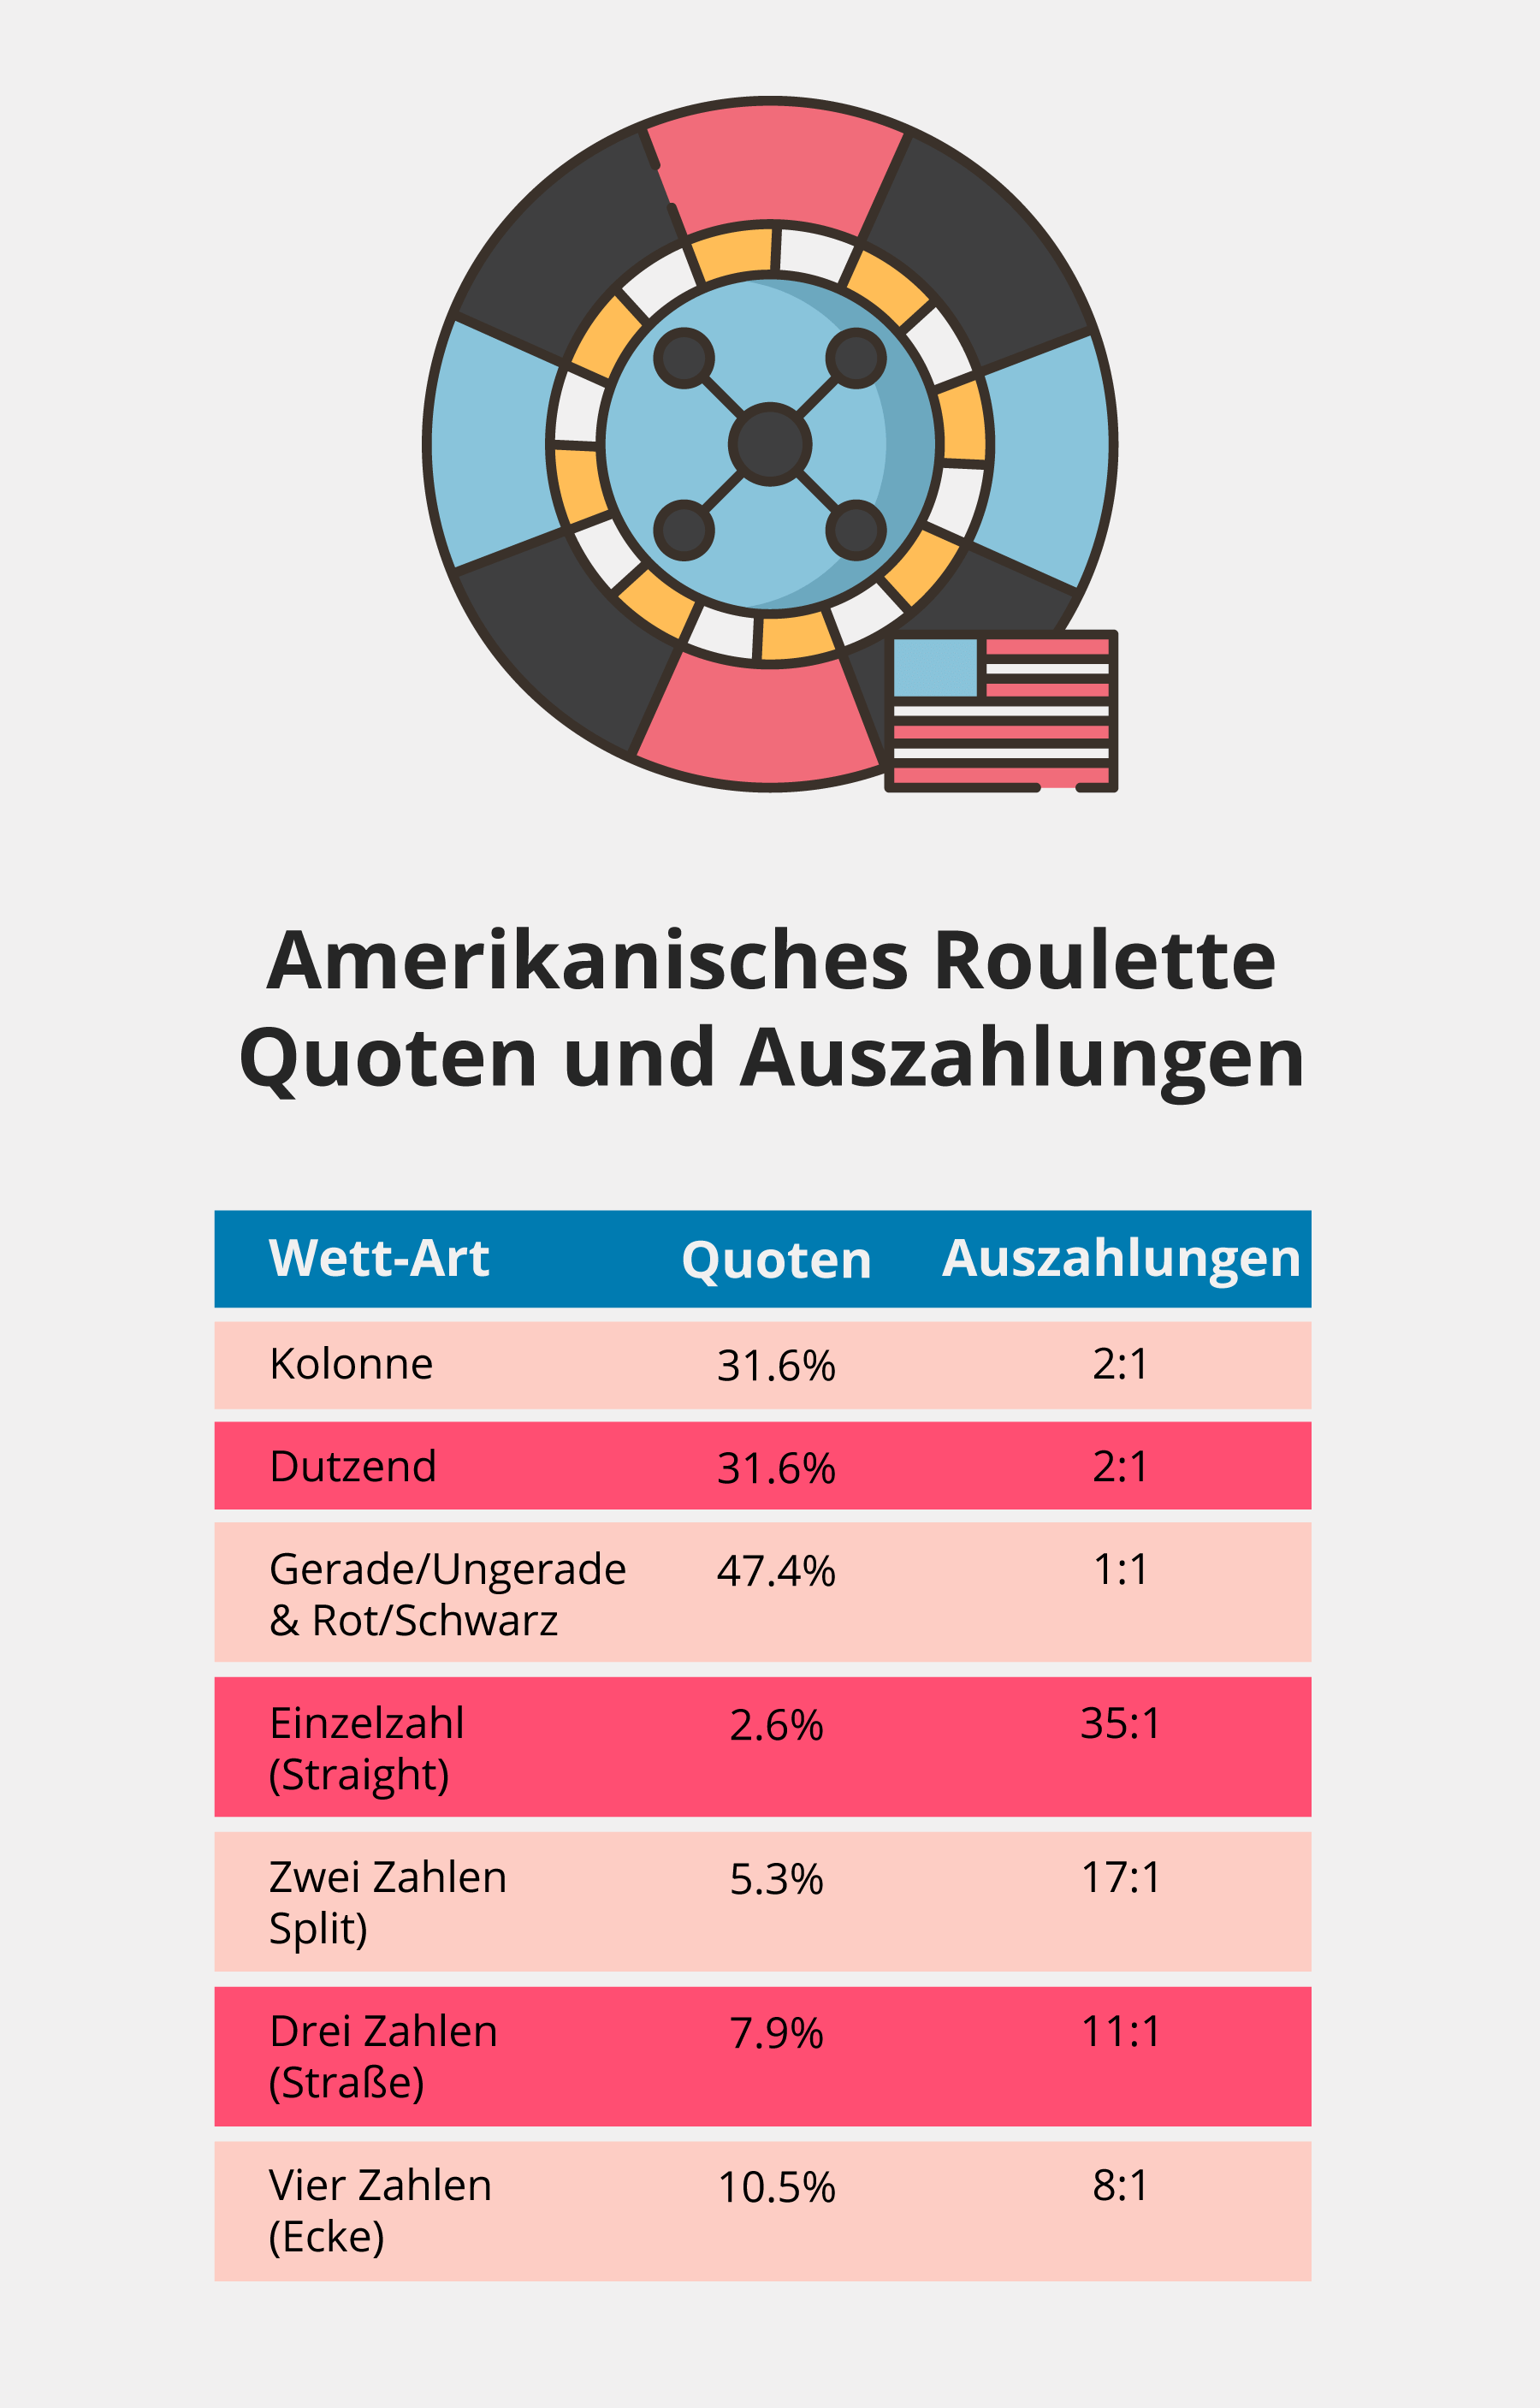 Quoten und Auszahlungen beim American Rouette